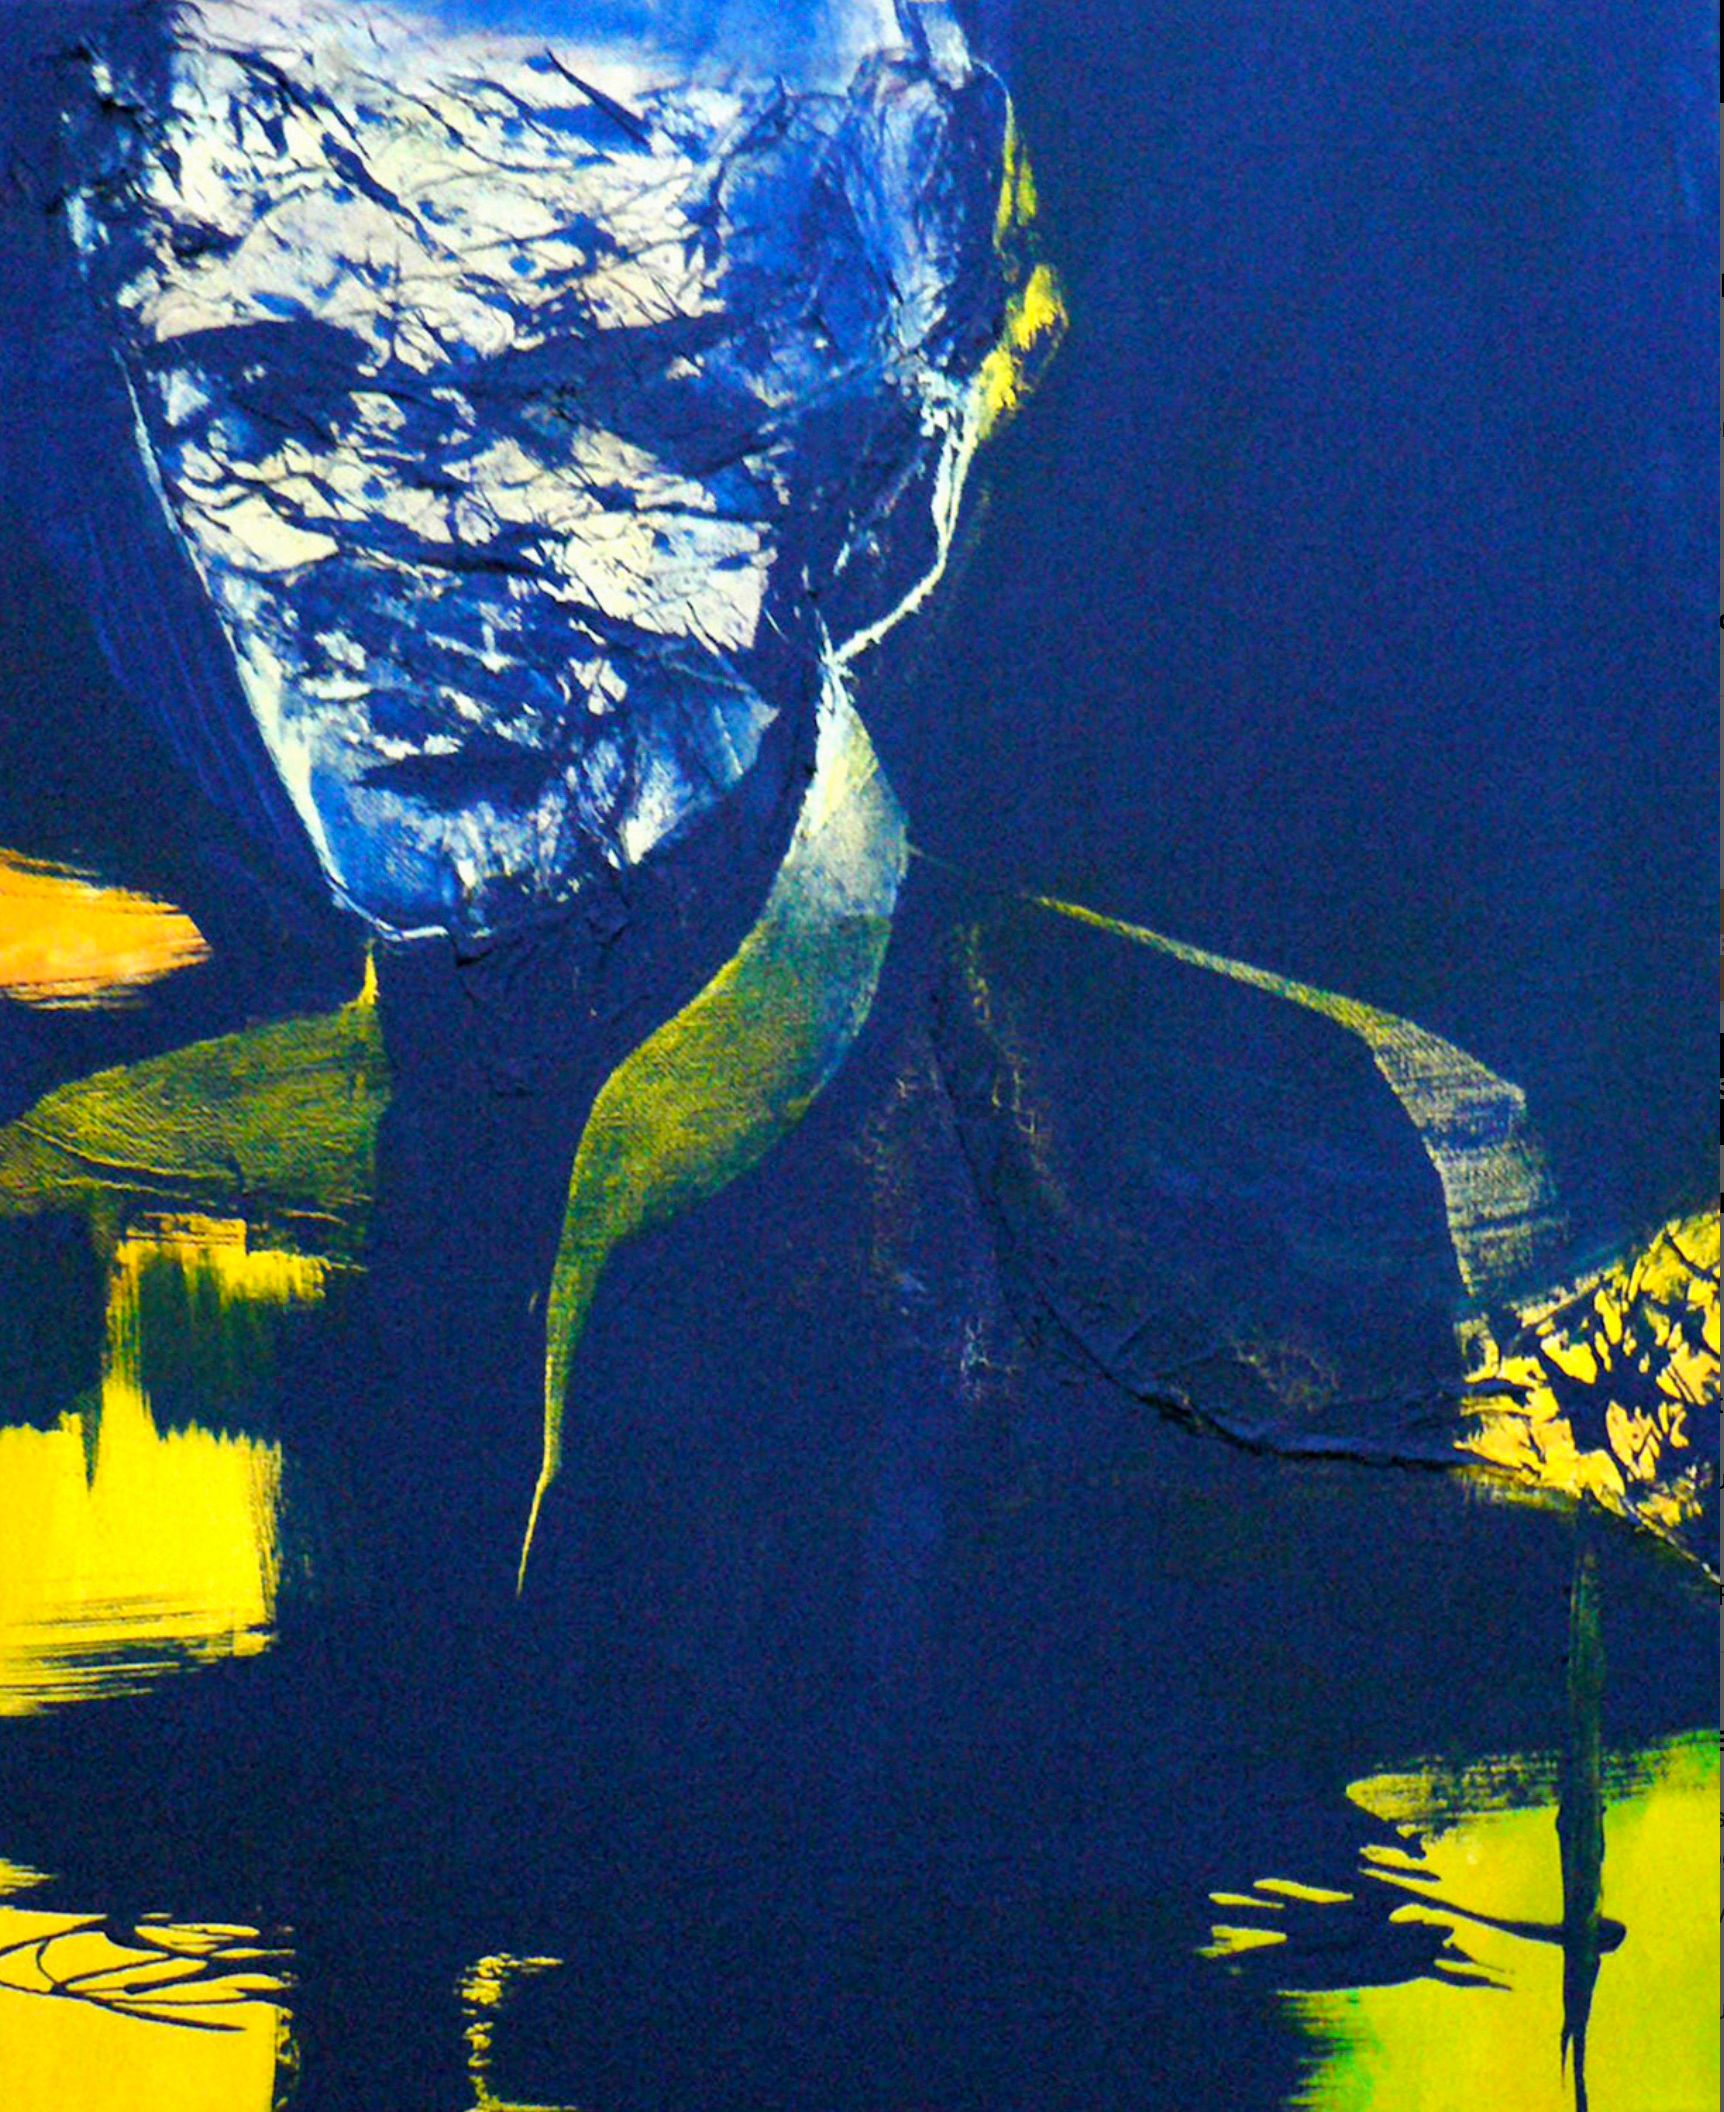 El cuadro "Aparición" de Sylvia Baldeva muestra un hombre, personaje, noche, rostro, retrato collage de acrílico y papel de arroz sobre lienzo.  Los colores predominantes son el azul y el amarillo